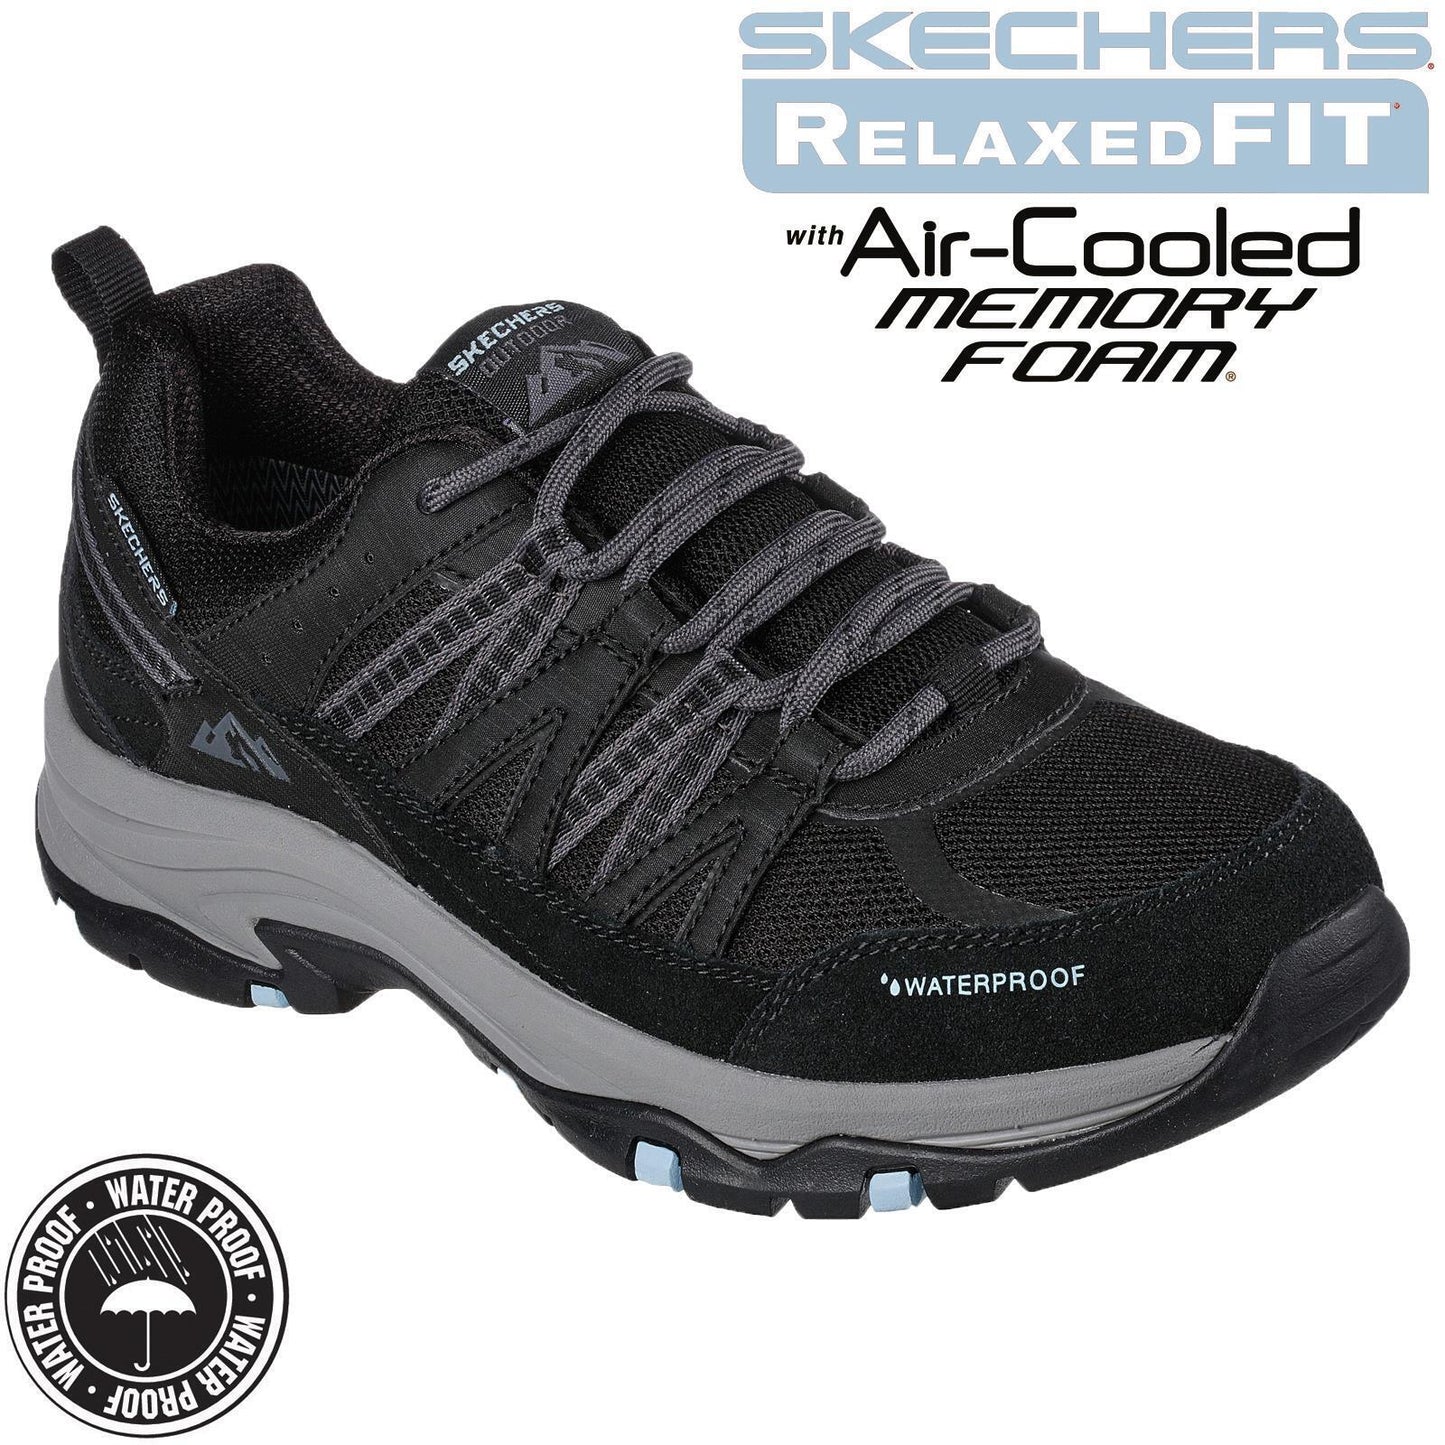 Skechers Ladies Trego Lookout Point Black/Blue Waterproof Walking Shoes